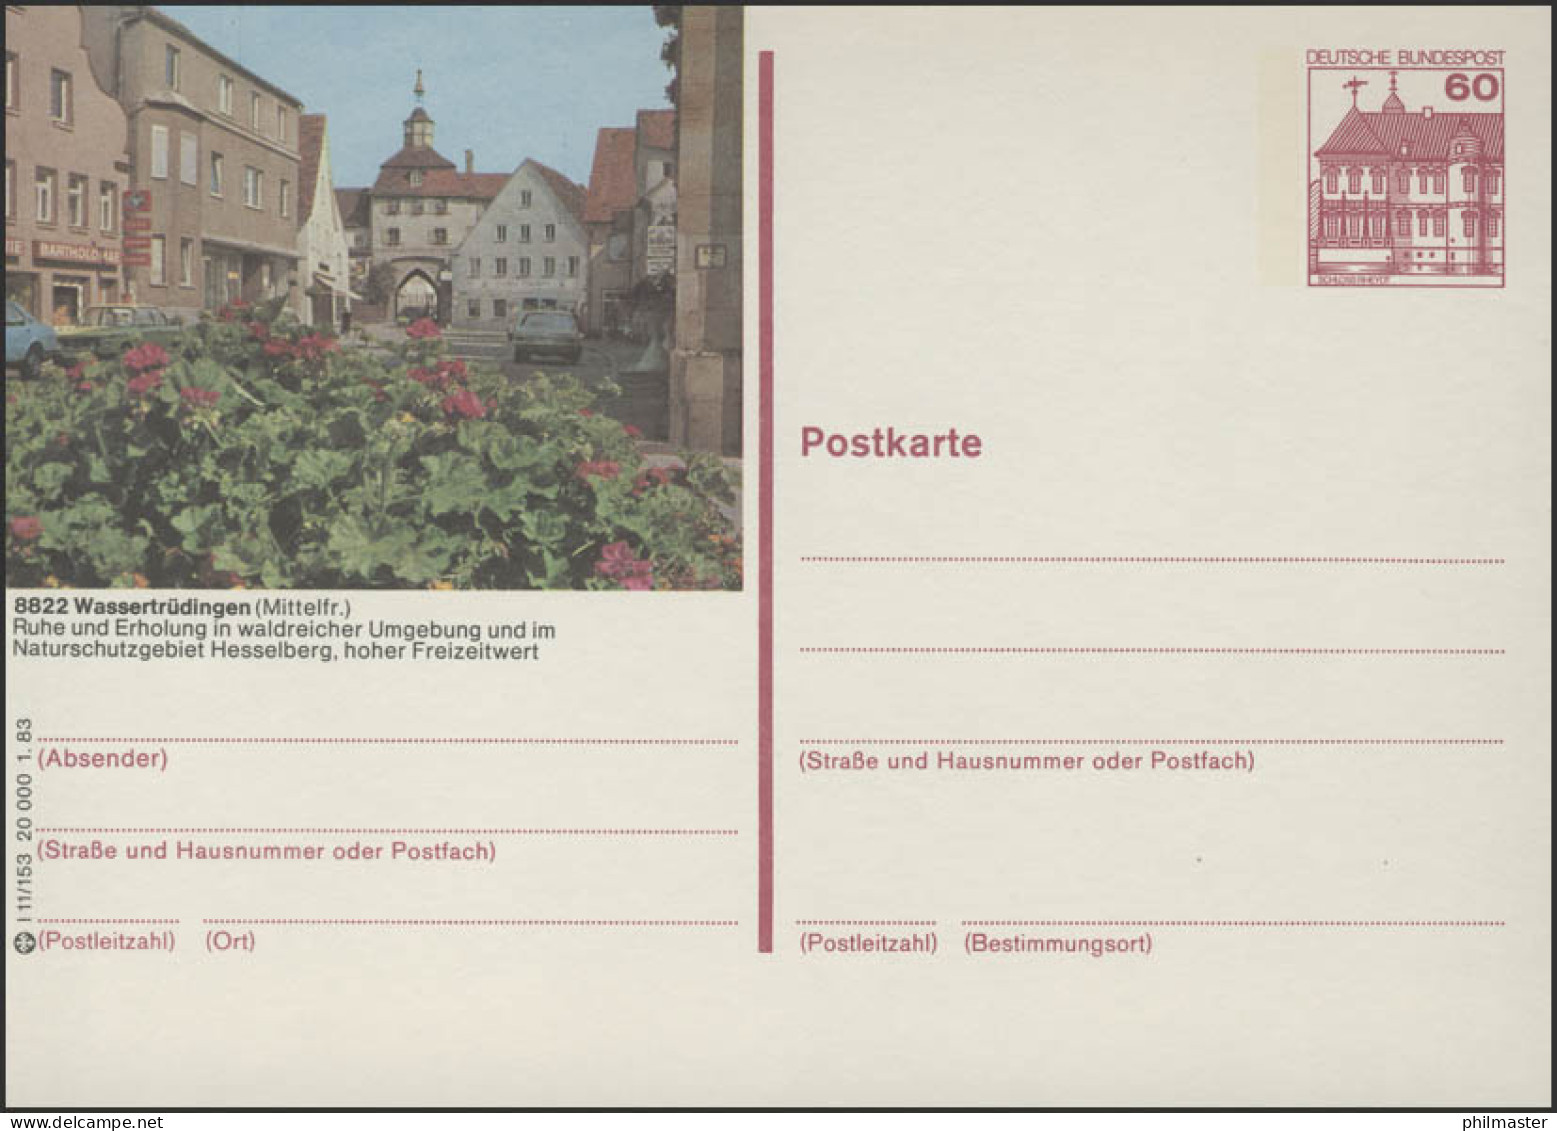 P138-l11/153 - 8822 Wassertrüdingen, Stadtansicht ** - Bildpostkarten - Ungebraucht